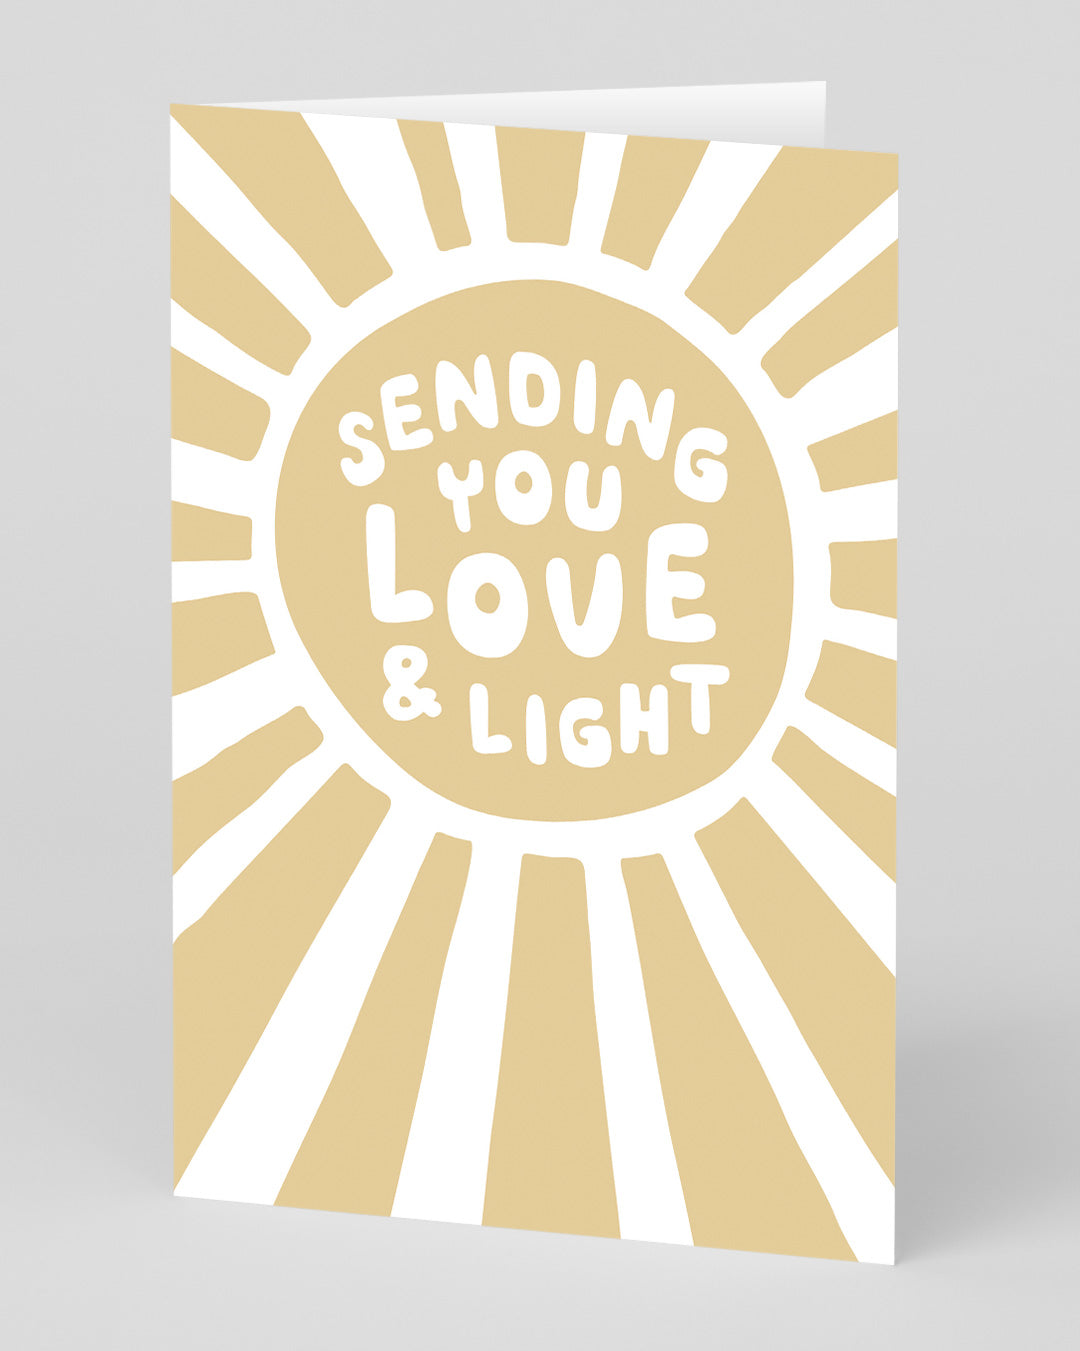 Sending Love & Light Card